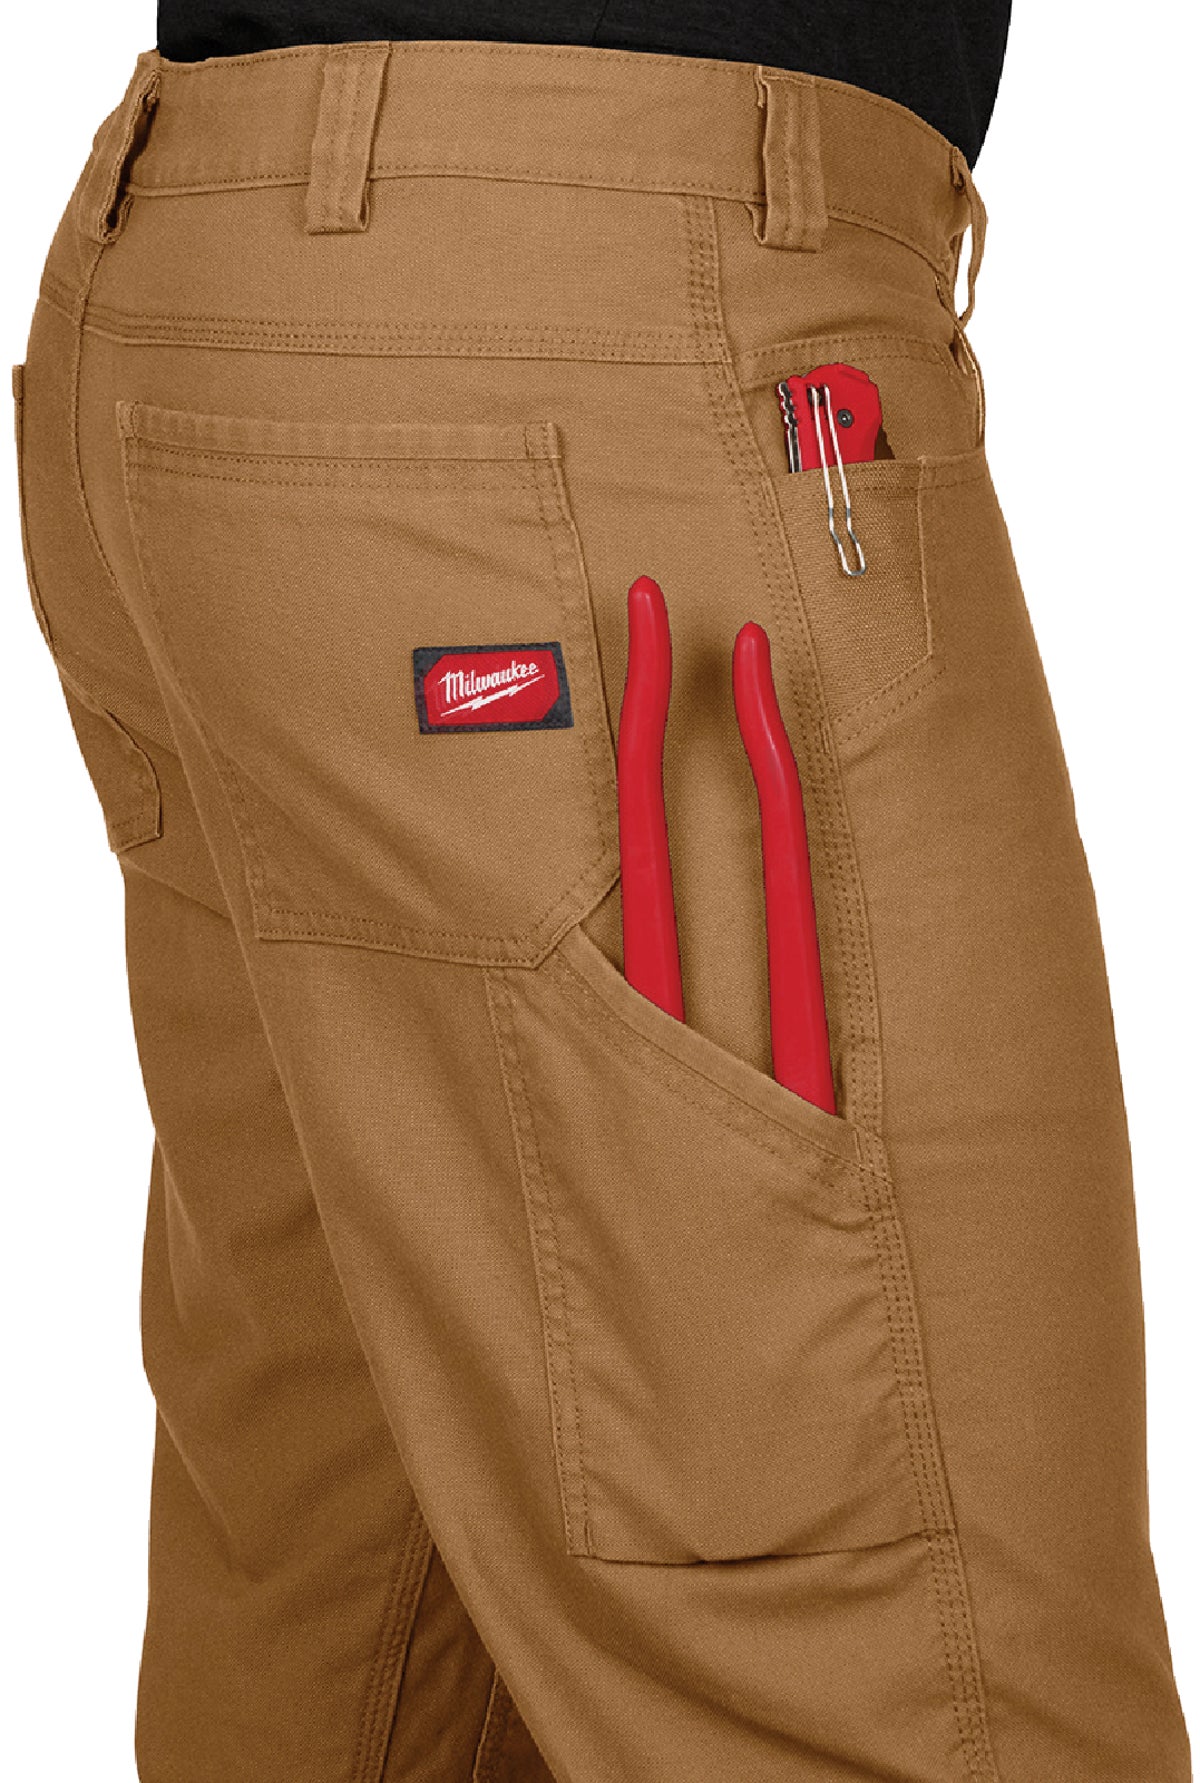 Skylinewears Mens Cordura Utility Tool Pockets Pants Carpenter Heavy Duty  Knee Reinforced Safety Work Wear Trousers B1 Black W30-L30 - Walmart.com